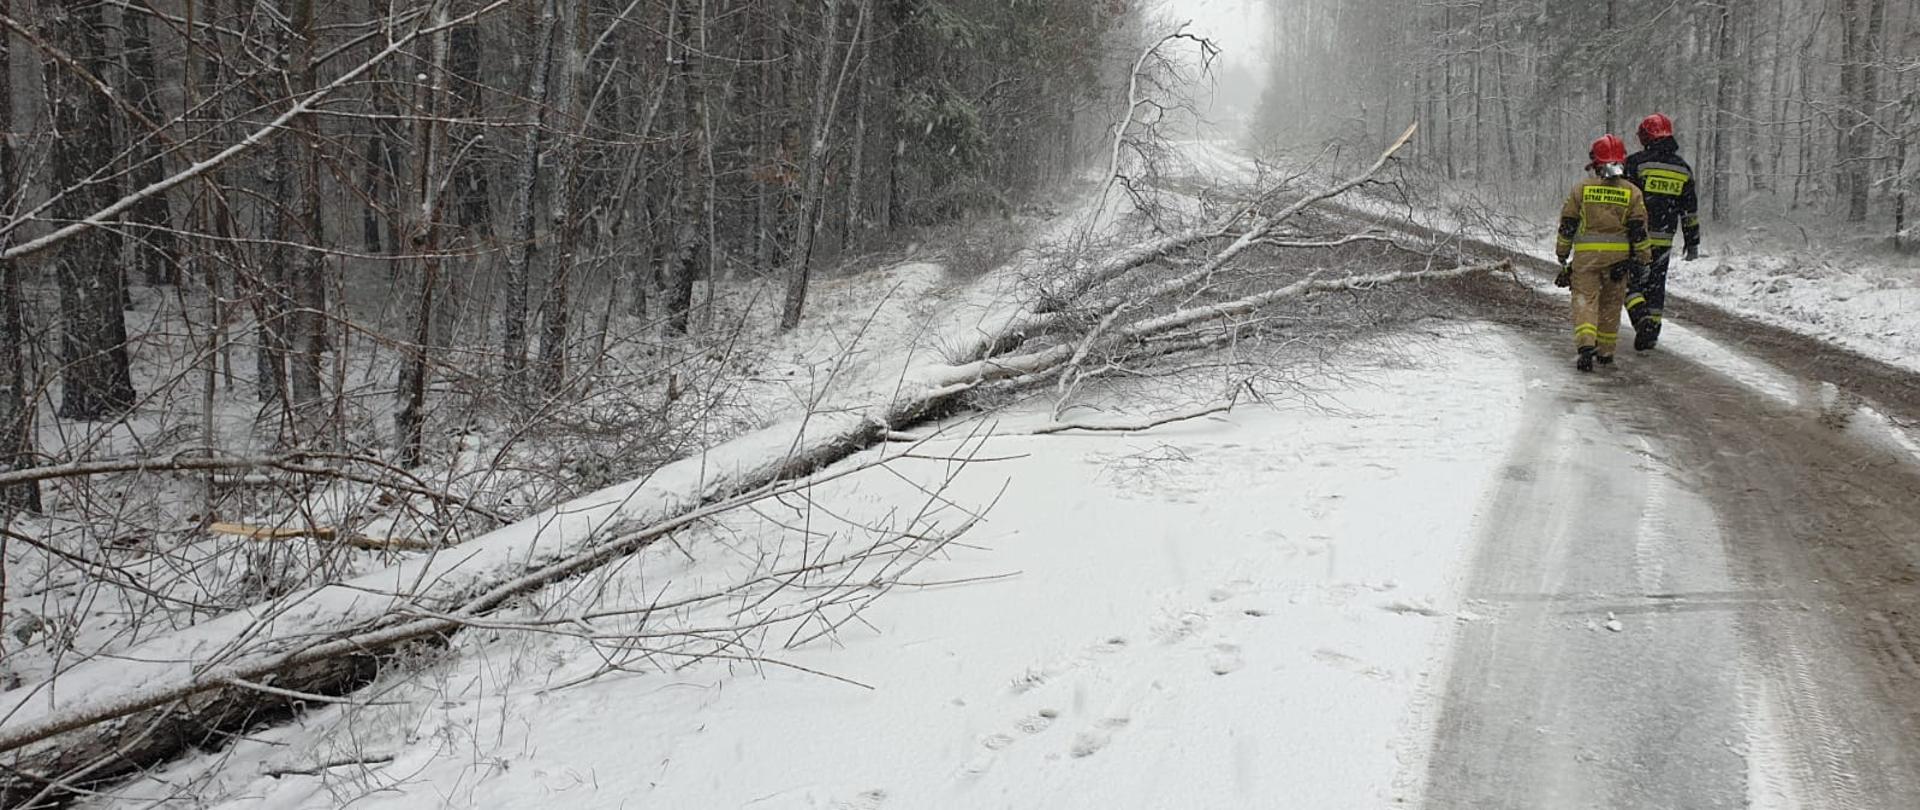 Powalone drzewo na jezdni z powodu silnych opadów śniegu, do którego udają się strażacy celem jego usunięcia z drogi.